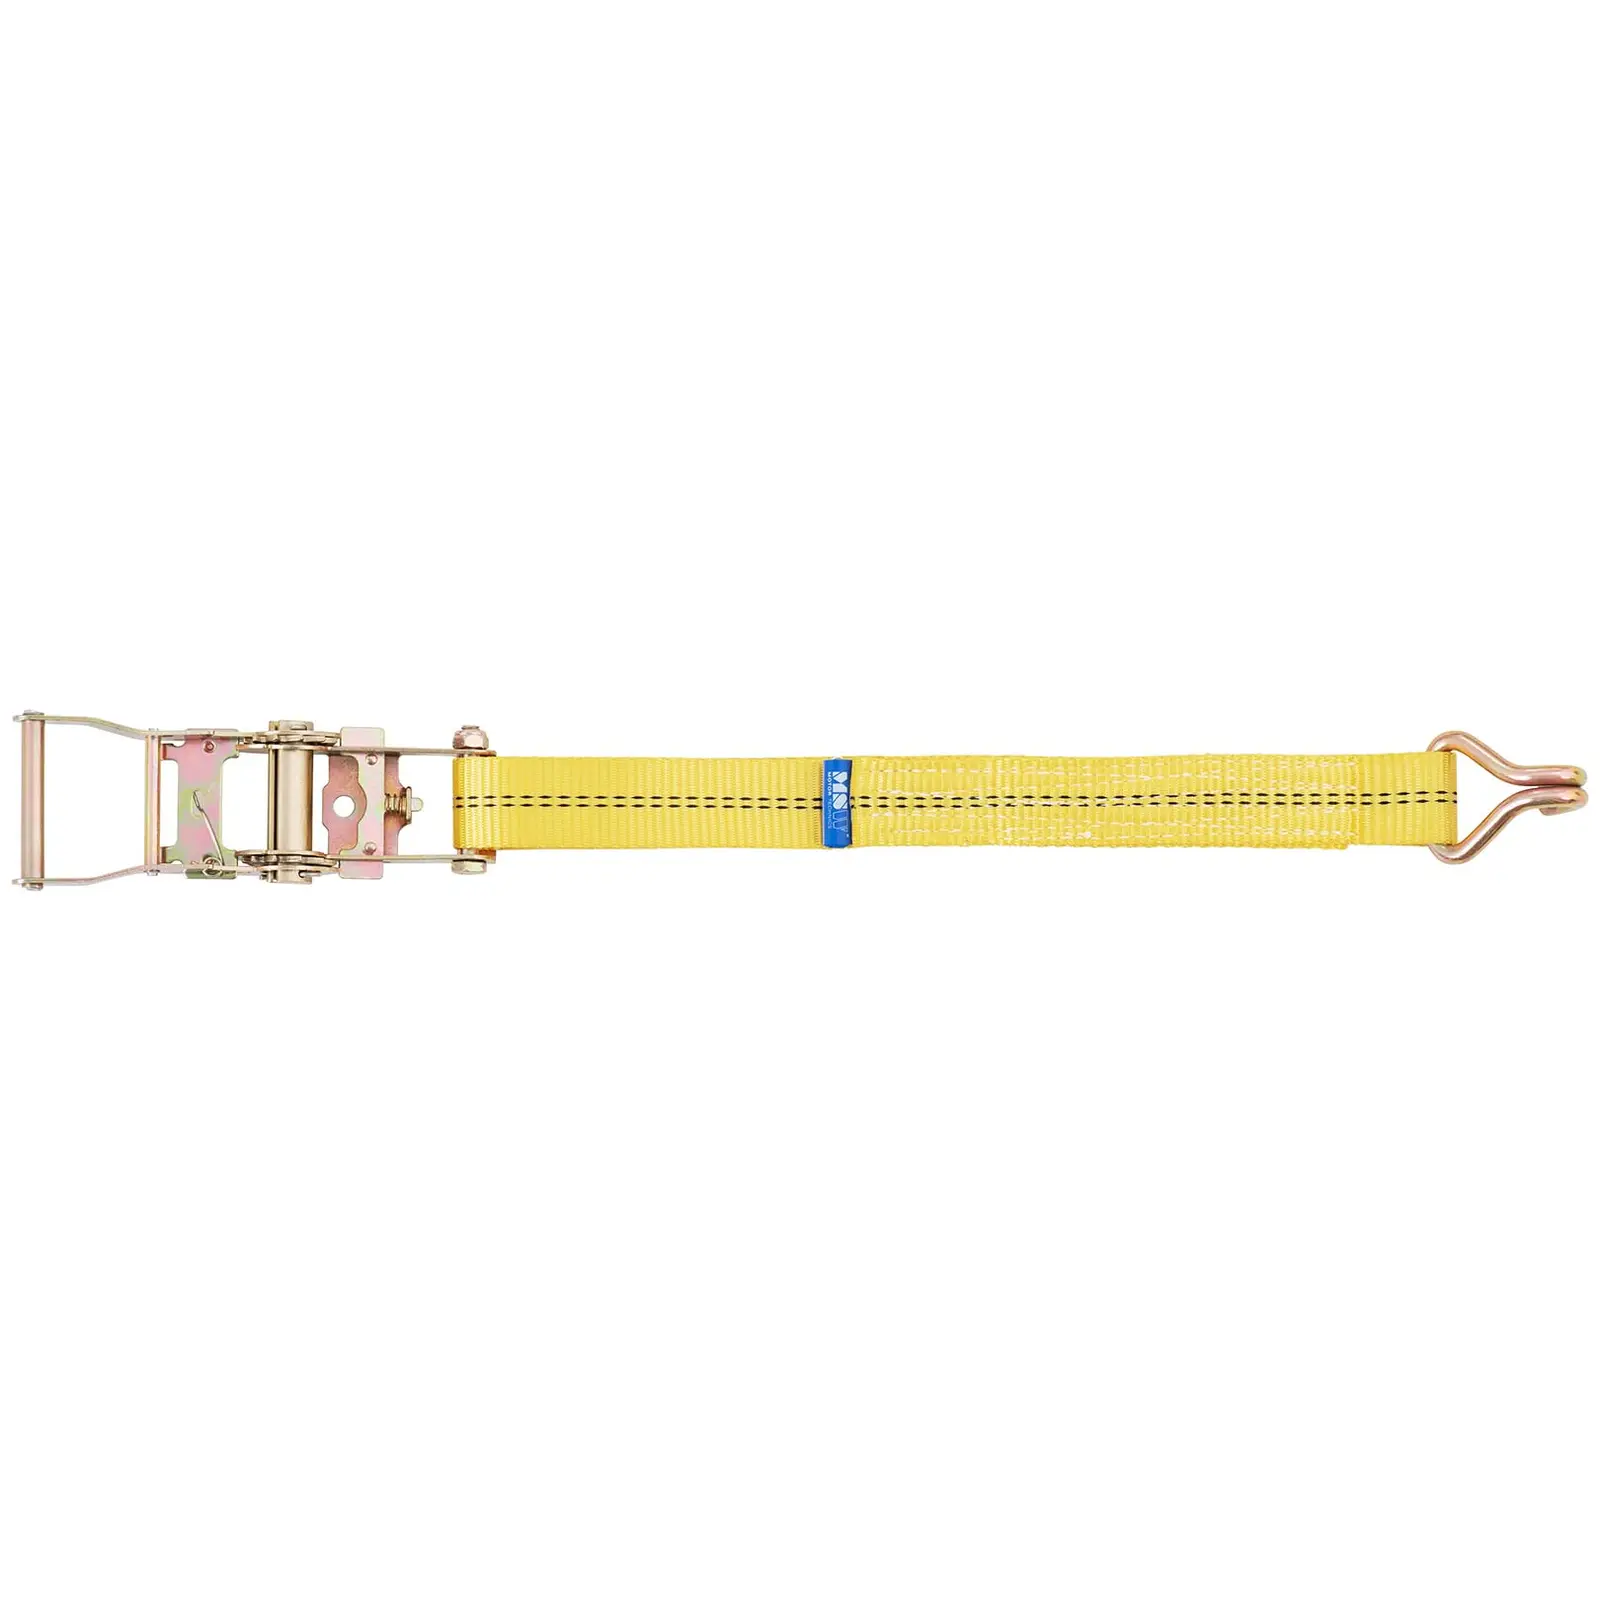 4 Ratchet Straps - load restraint - Length 6 m (5.5 m loose end + 0.5 m ratchet end)